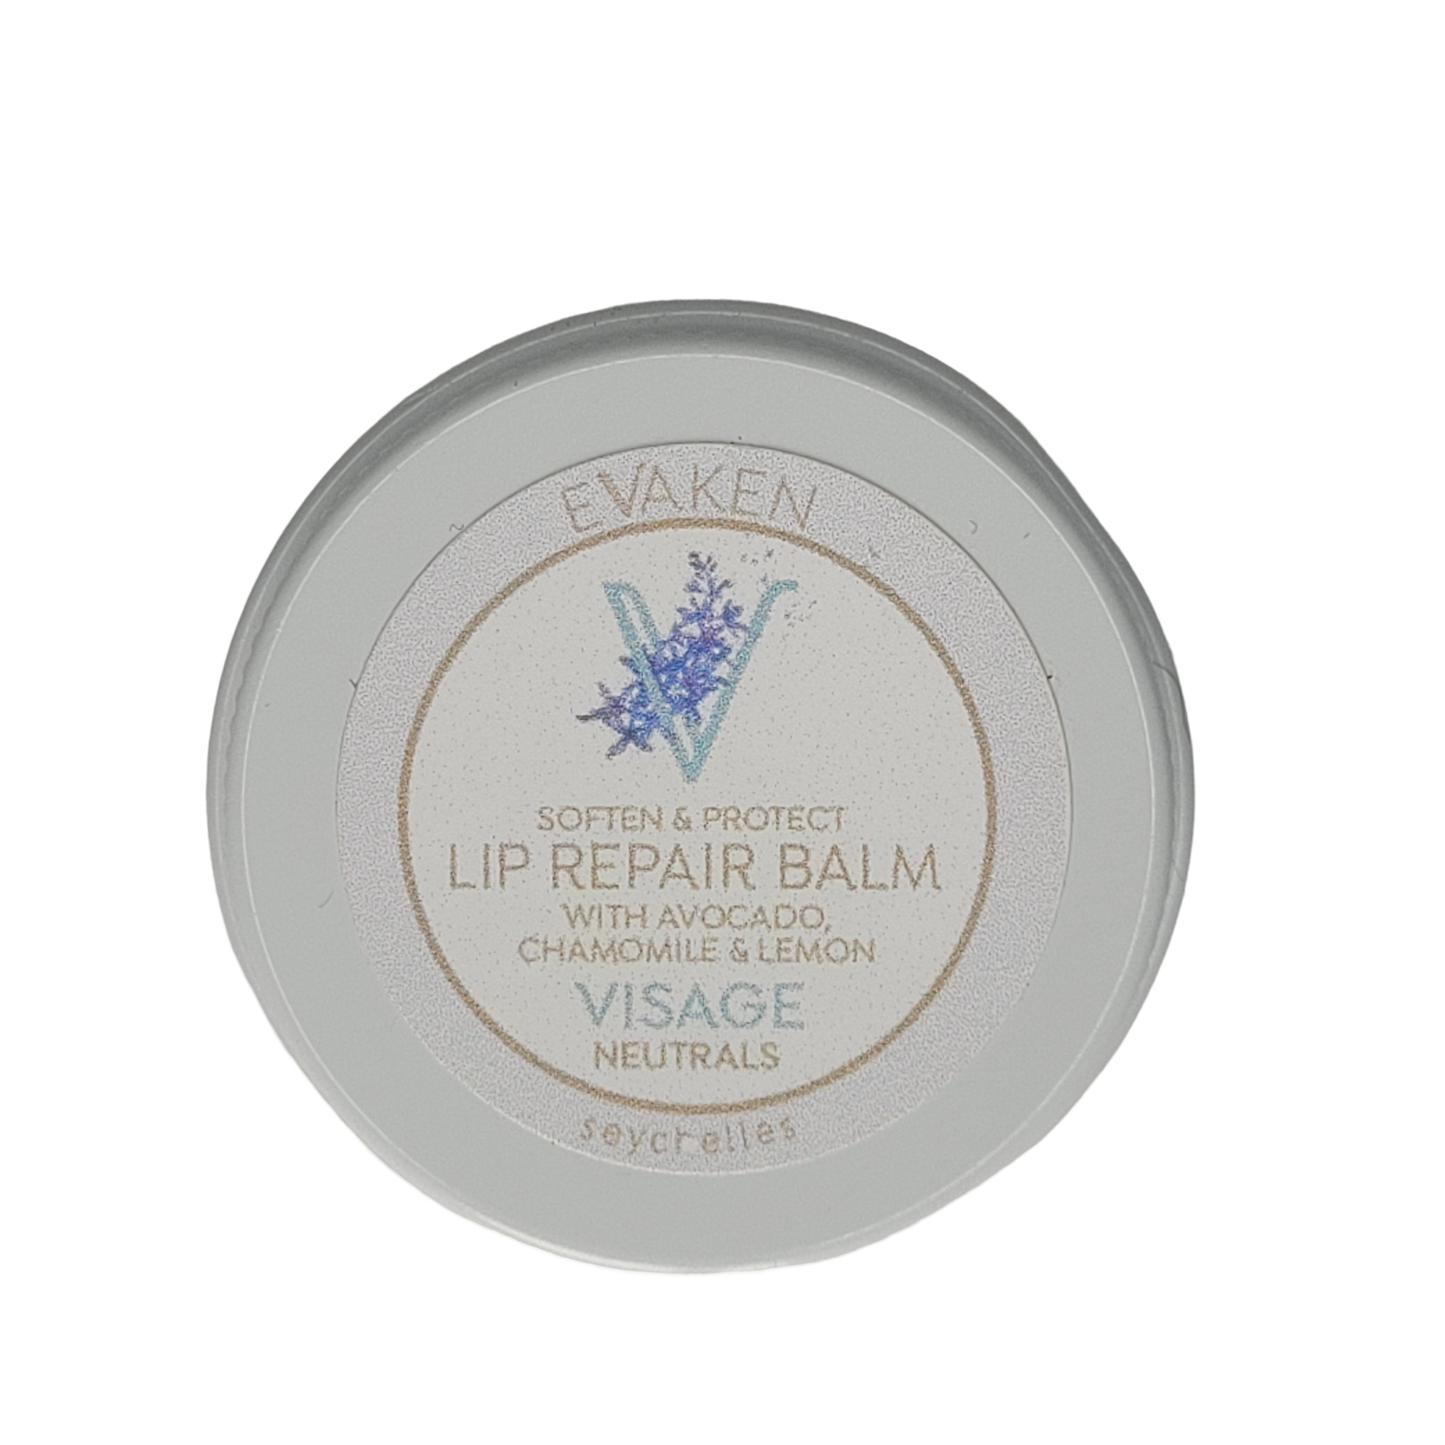 EVAKEN | Natürliche Lippenpflege Repair Balsam mit Avocado, Bienenwachs Kamille Zitrone für zarte geschmeidige Lippen